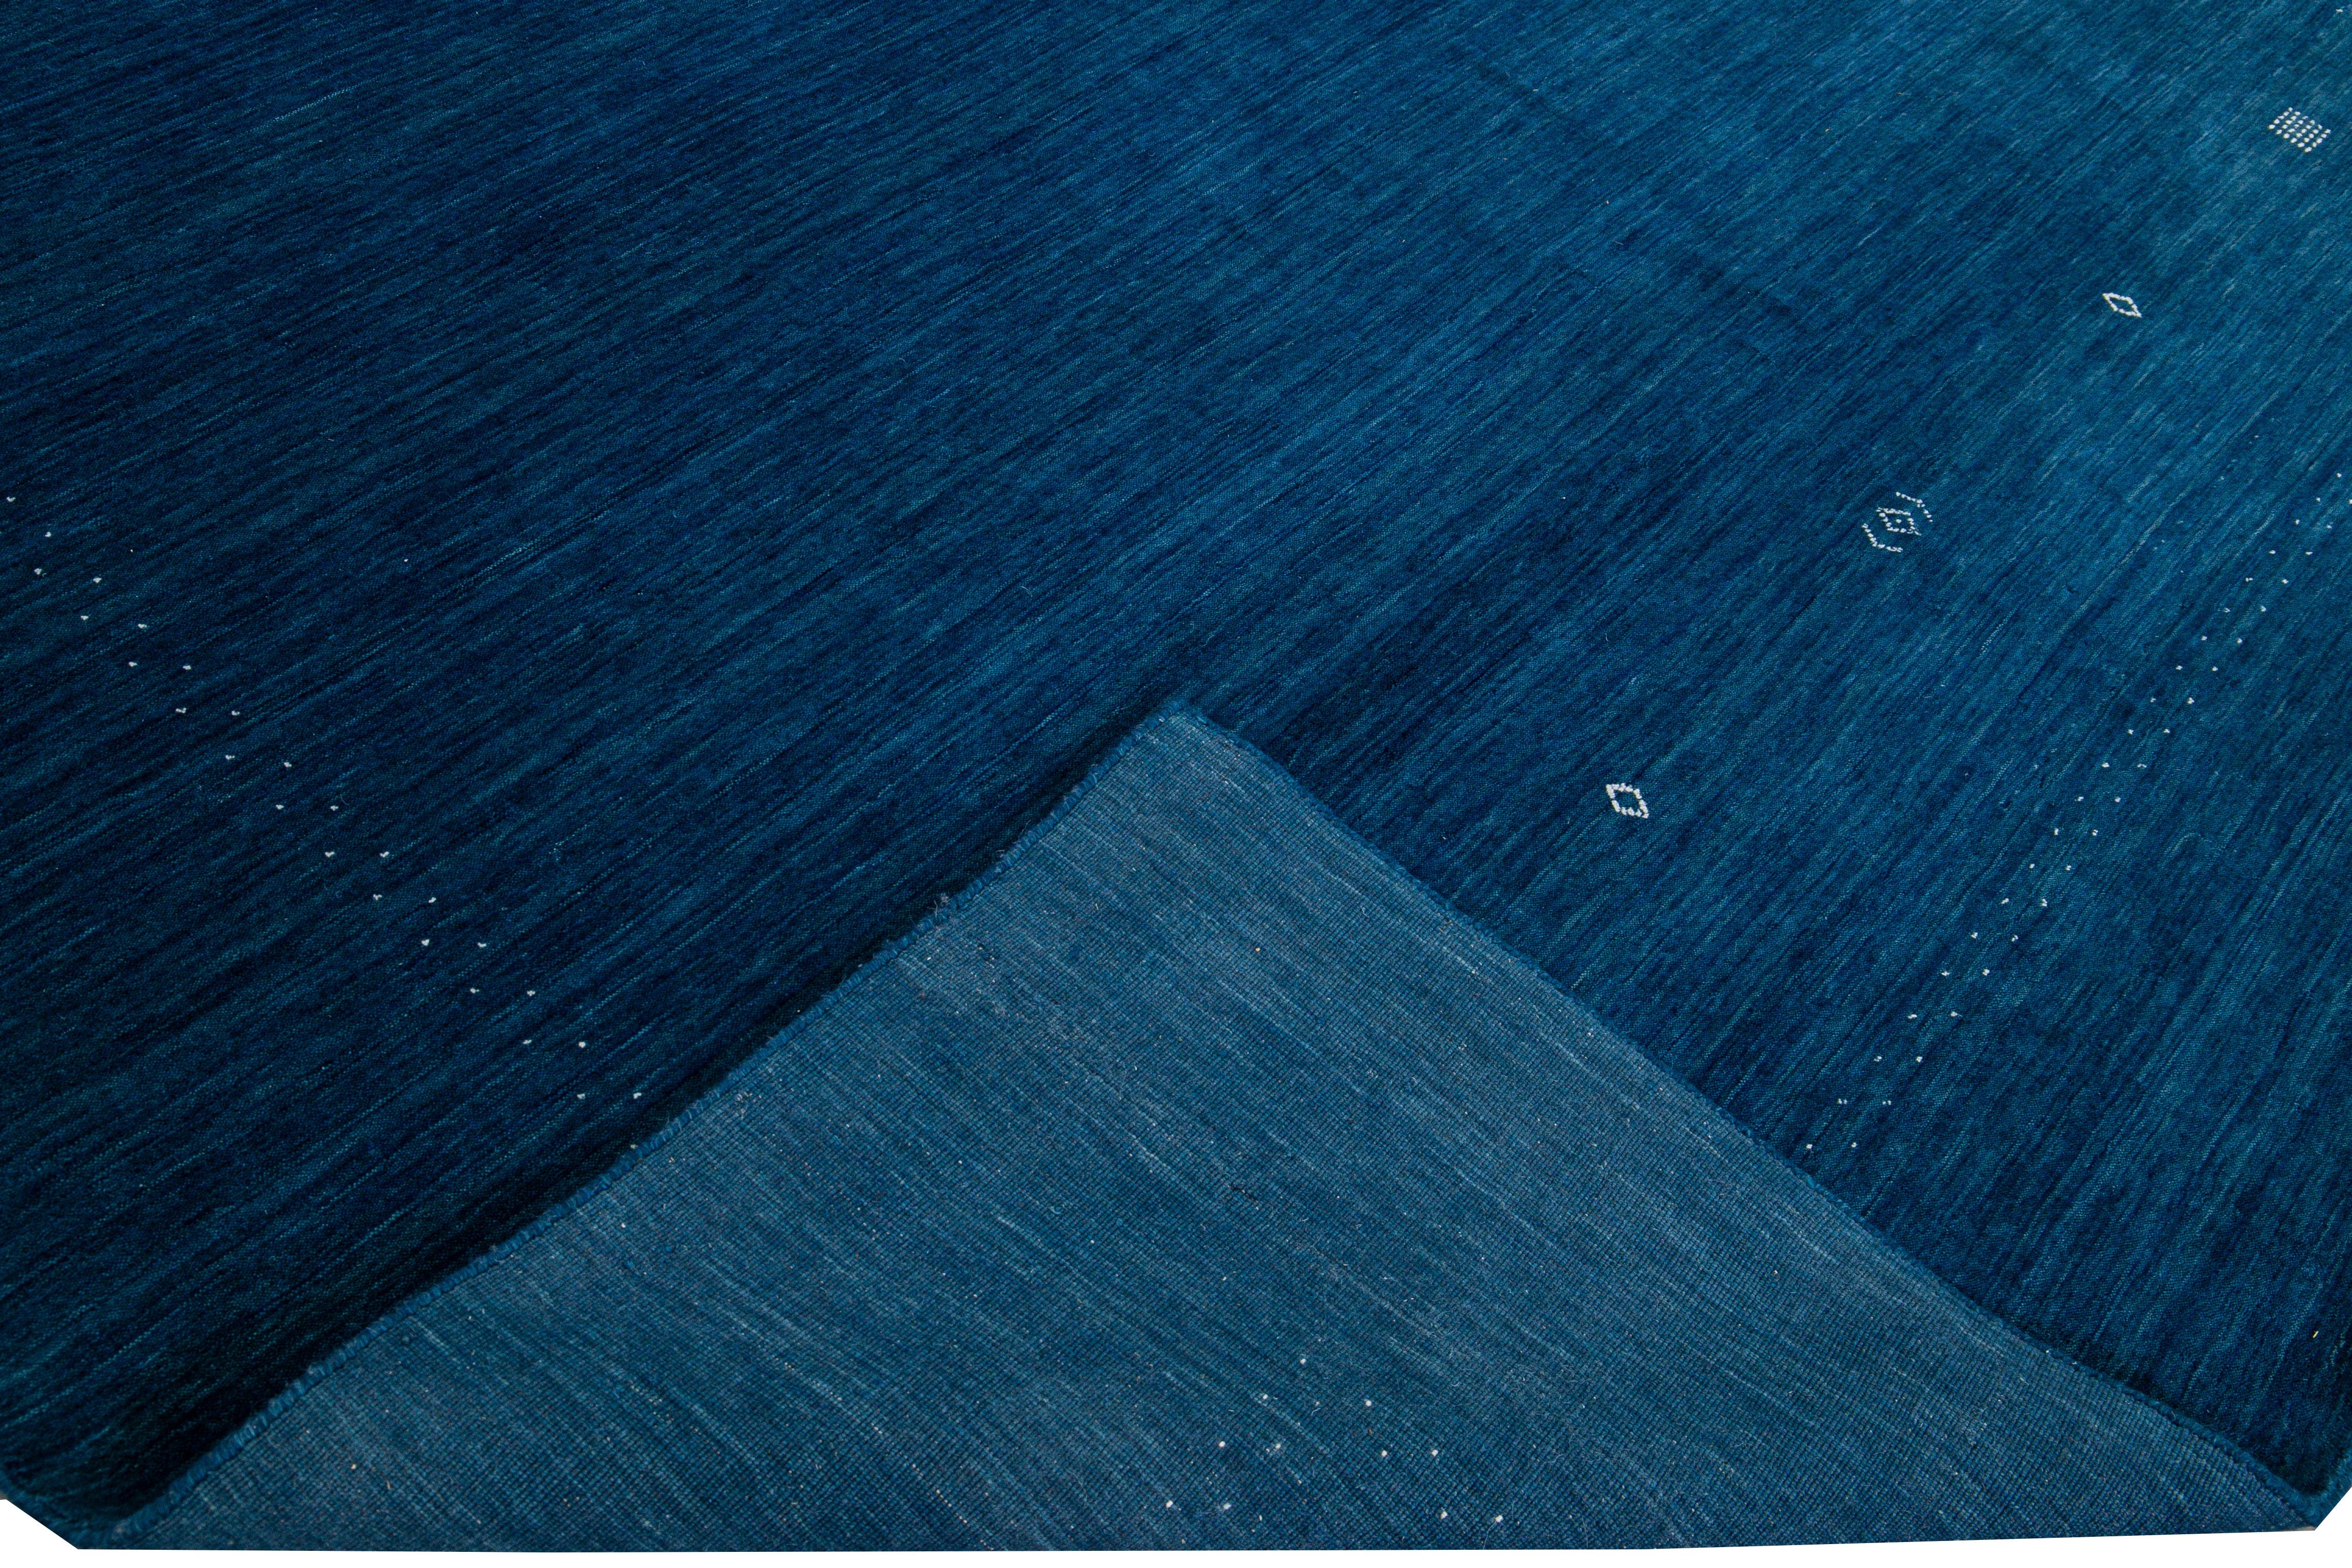 Schöner moderner Gabbeh-Stil Hand-Loom Wollteppich mit marineblauem Feld. Dieser Teppich im Gabbeh-Stil hat elfenbeinfarbene Akzente in einem herrlichen geometrischen Minimal-Design.

Dieser Teppich misst: 10'1